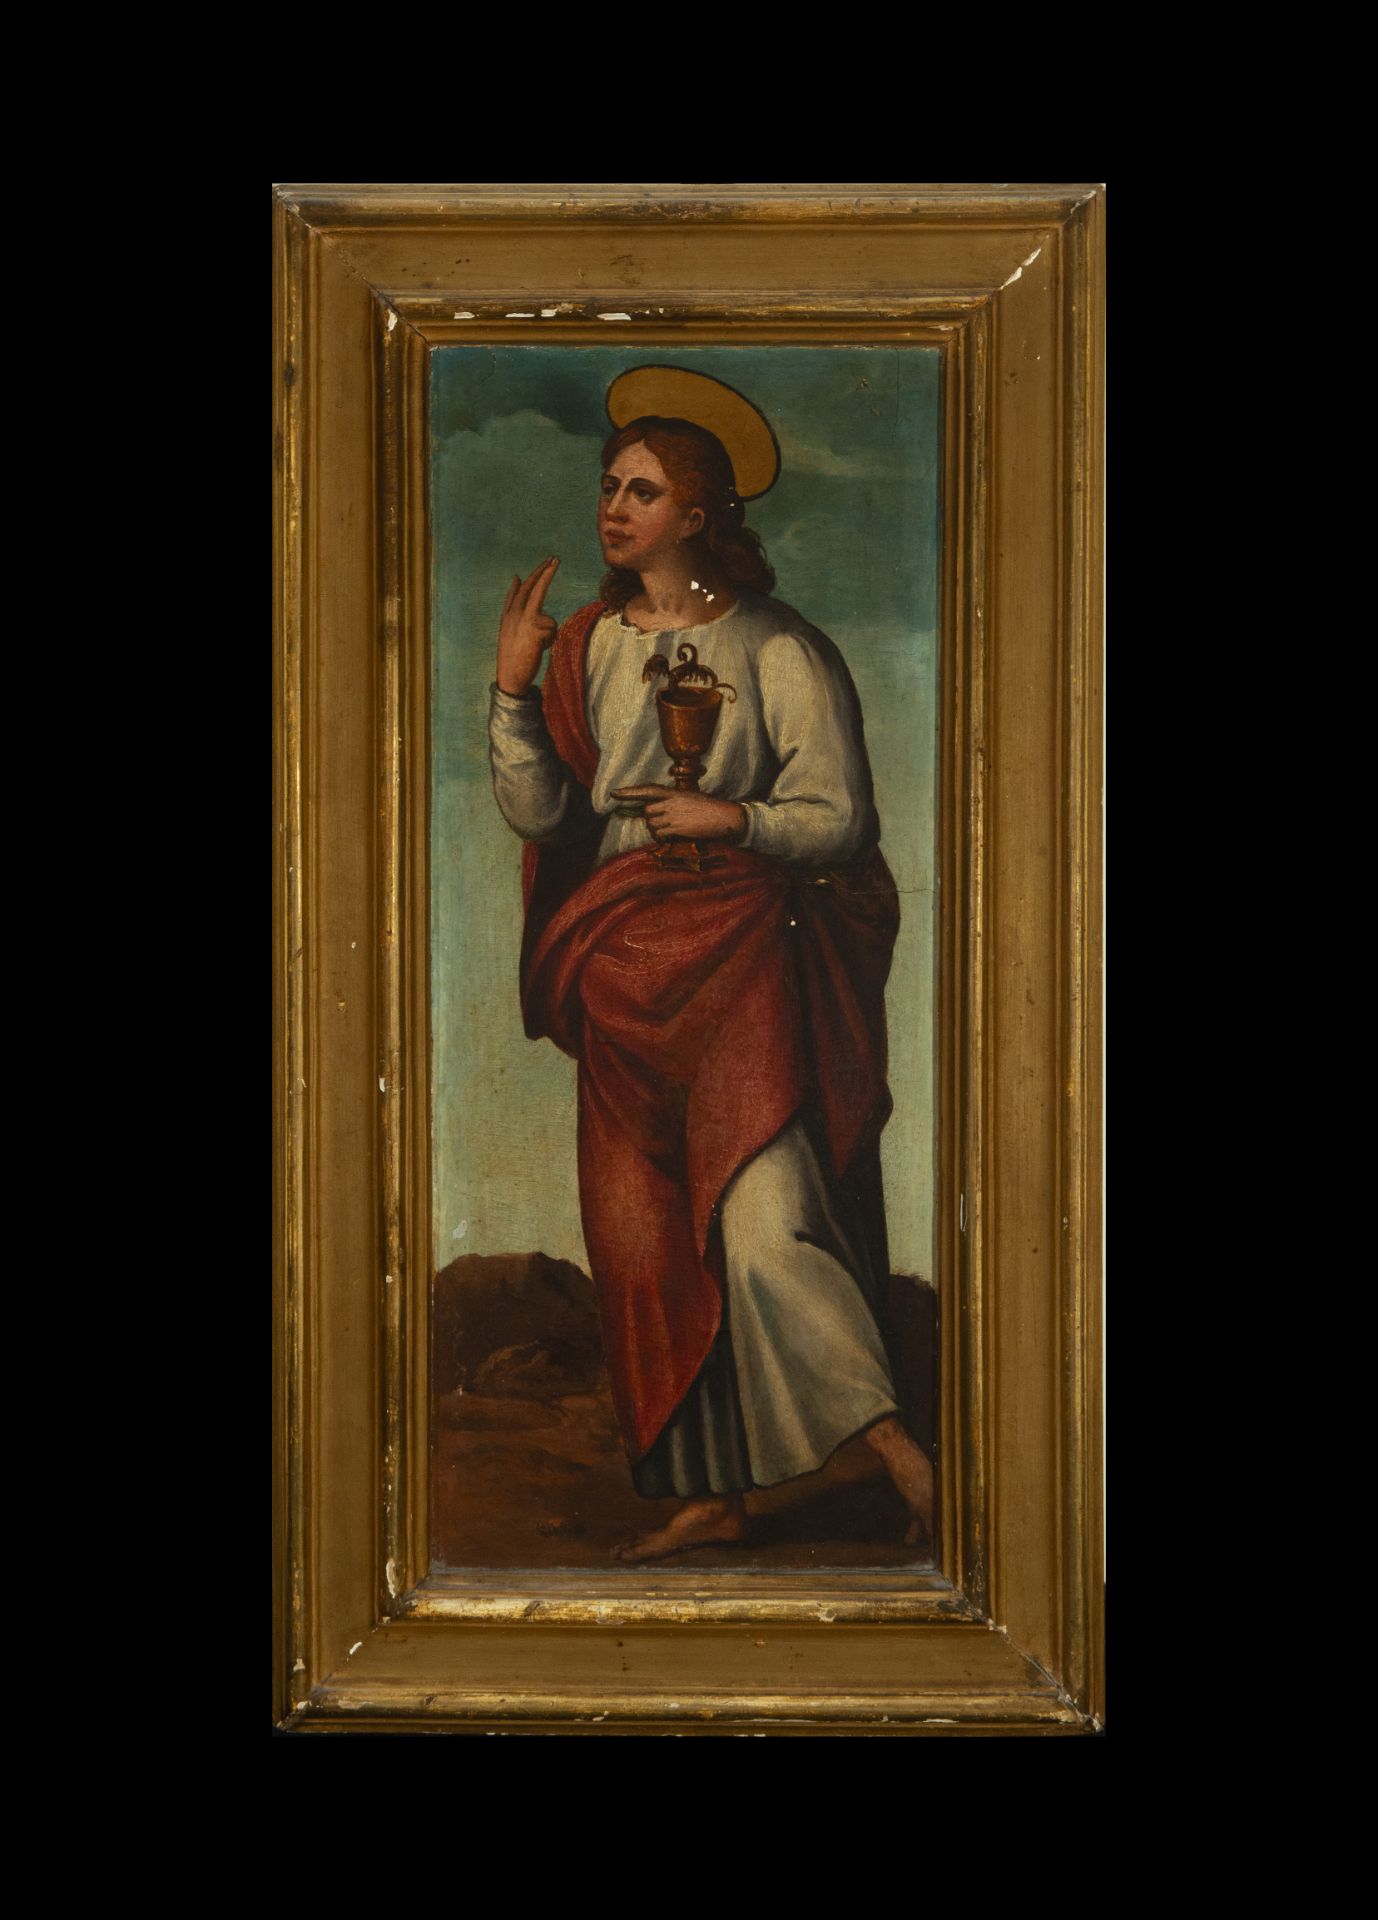 Saint John on Renaissance panel from the 16th century